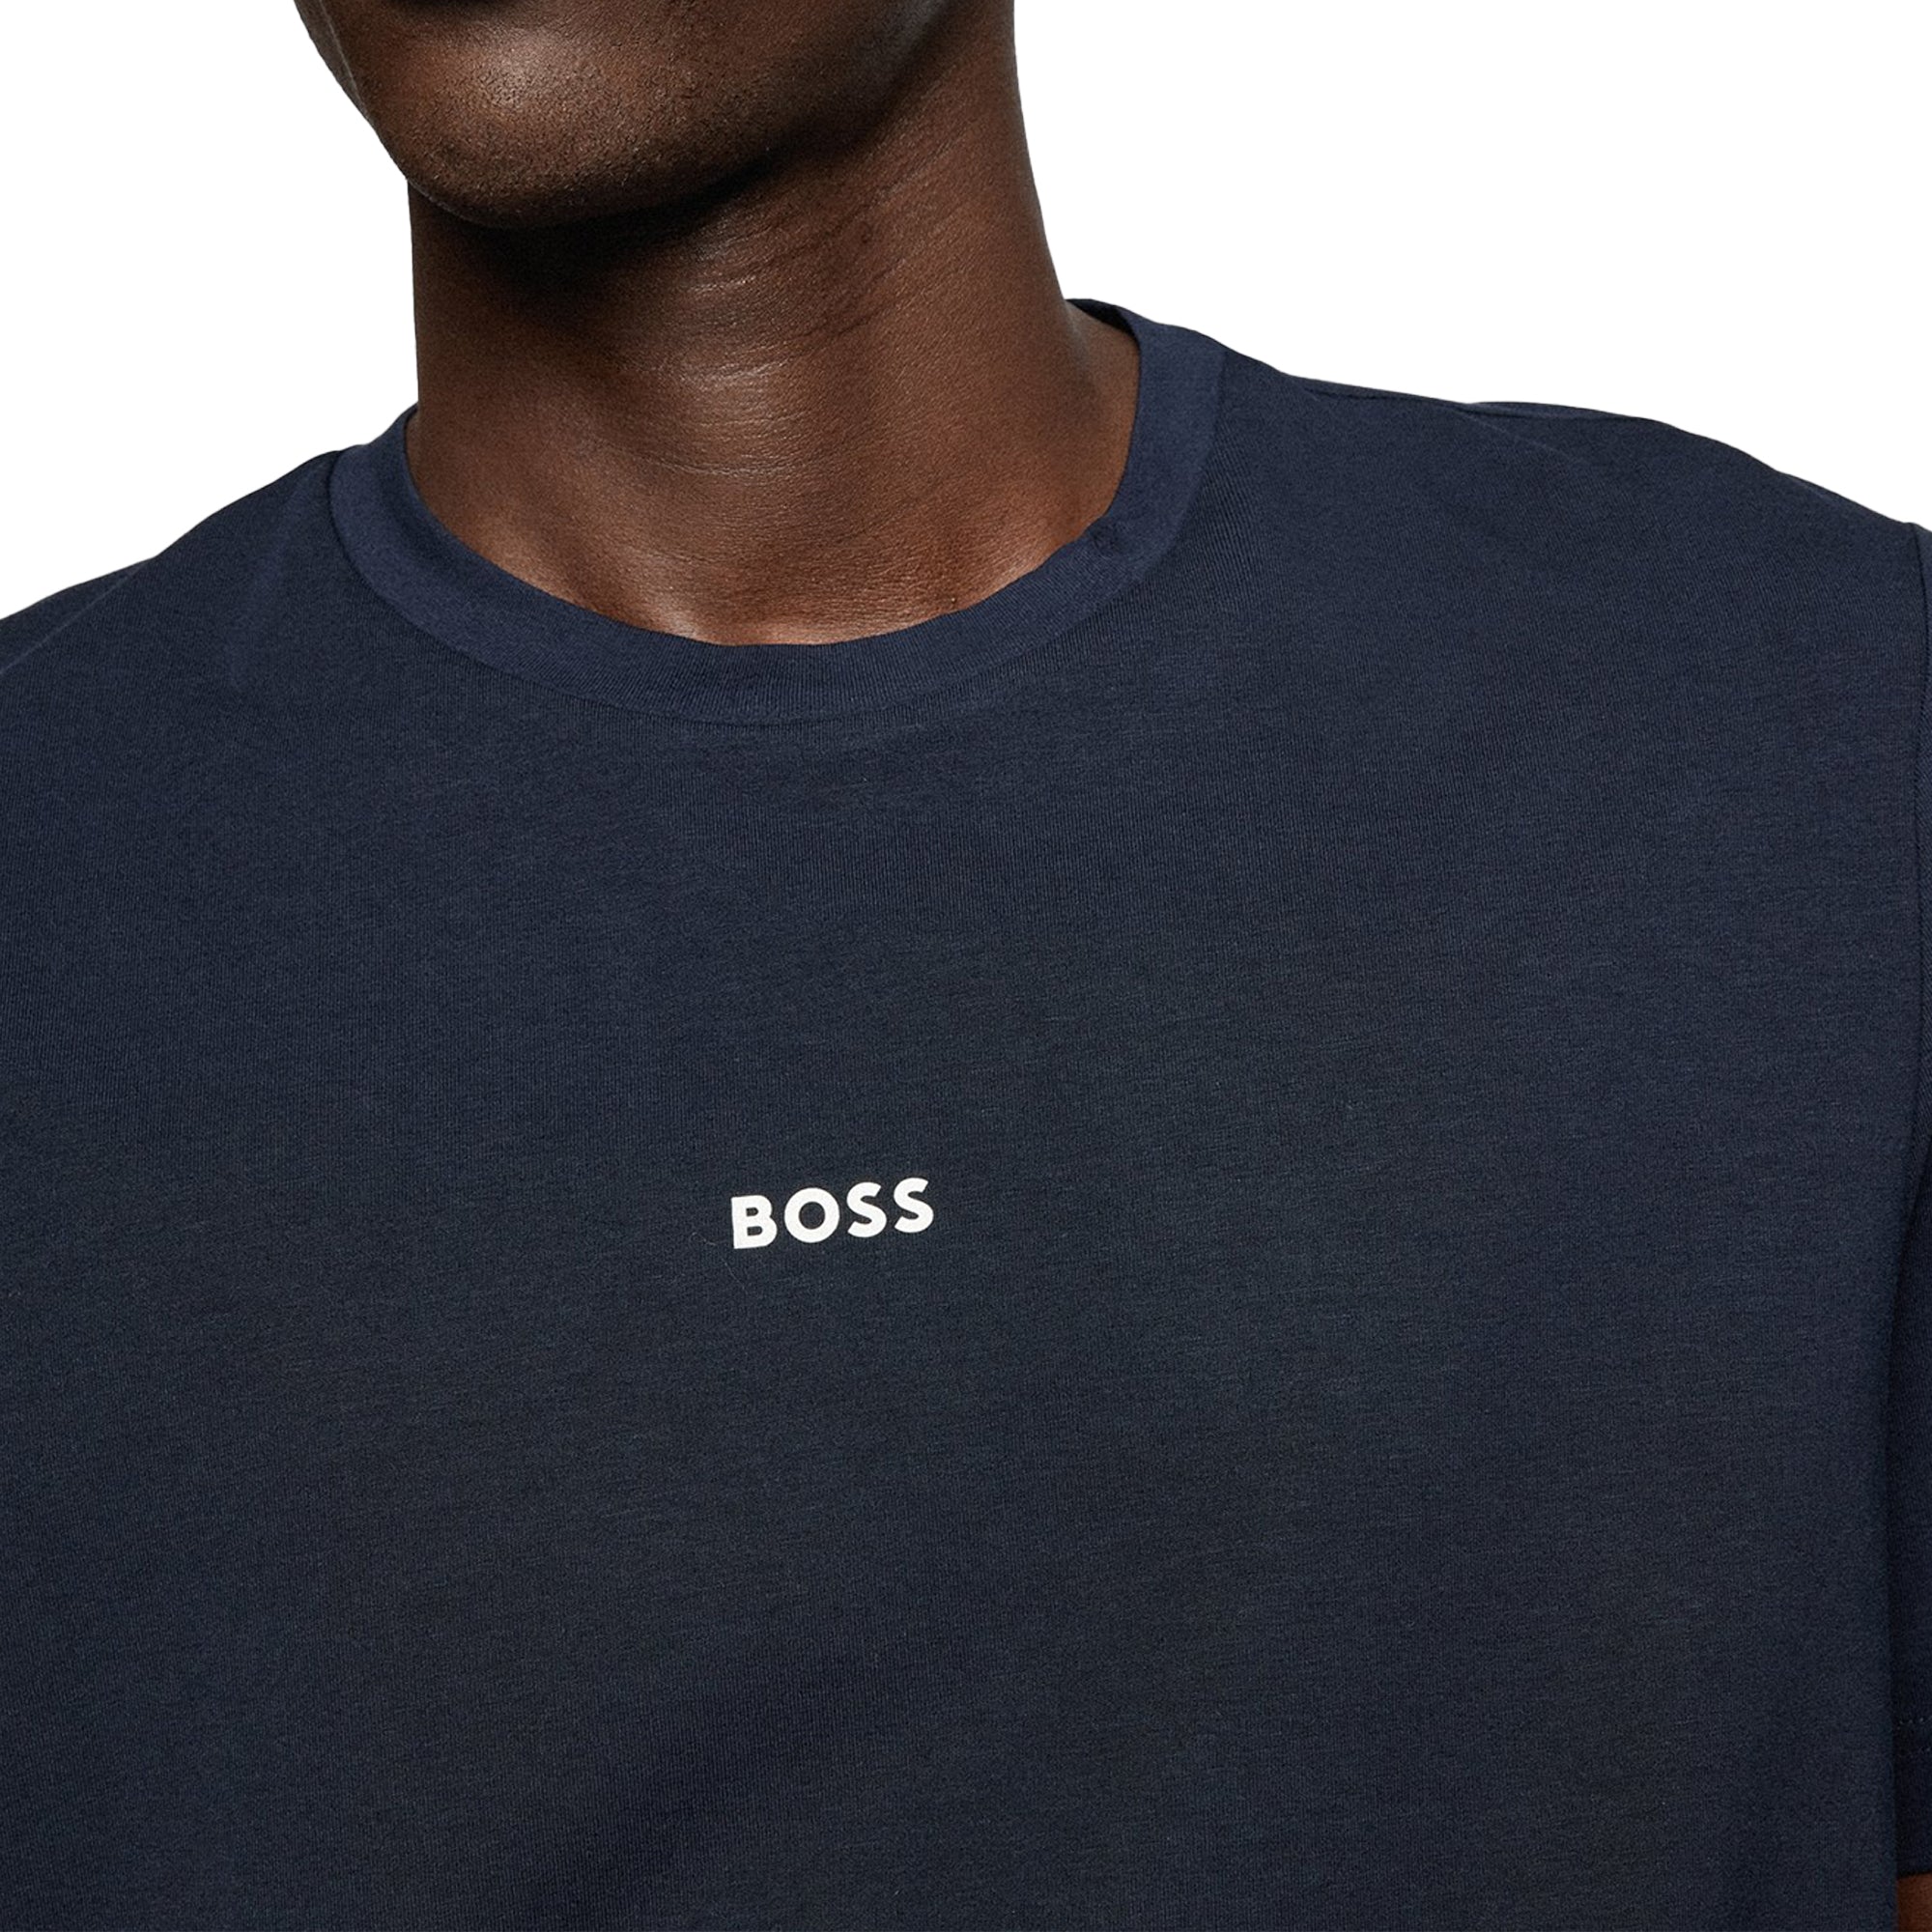 Boss TChup T-Shirt - Navy